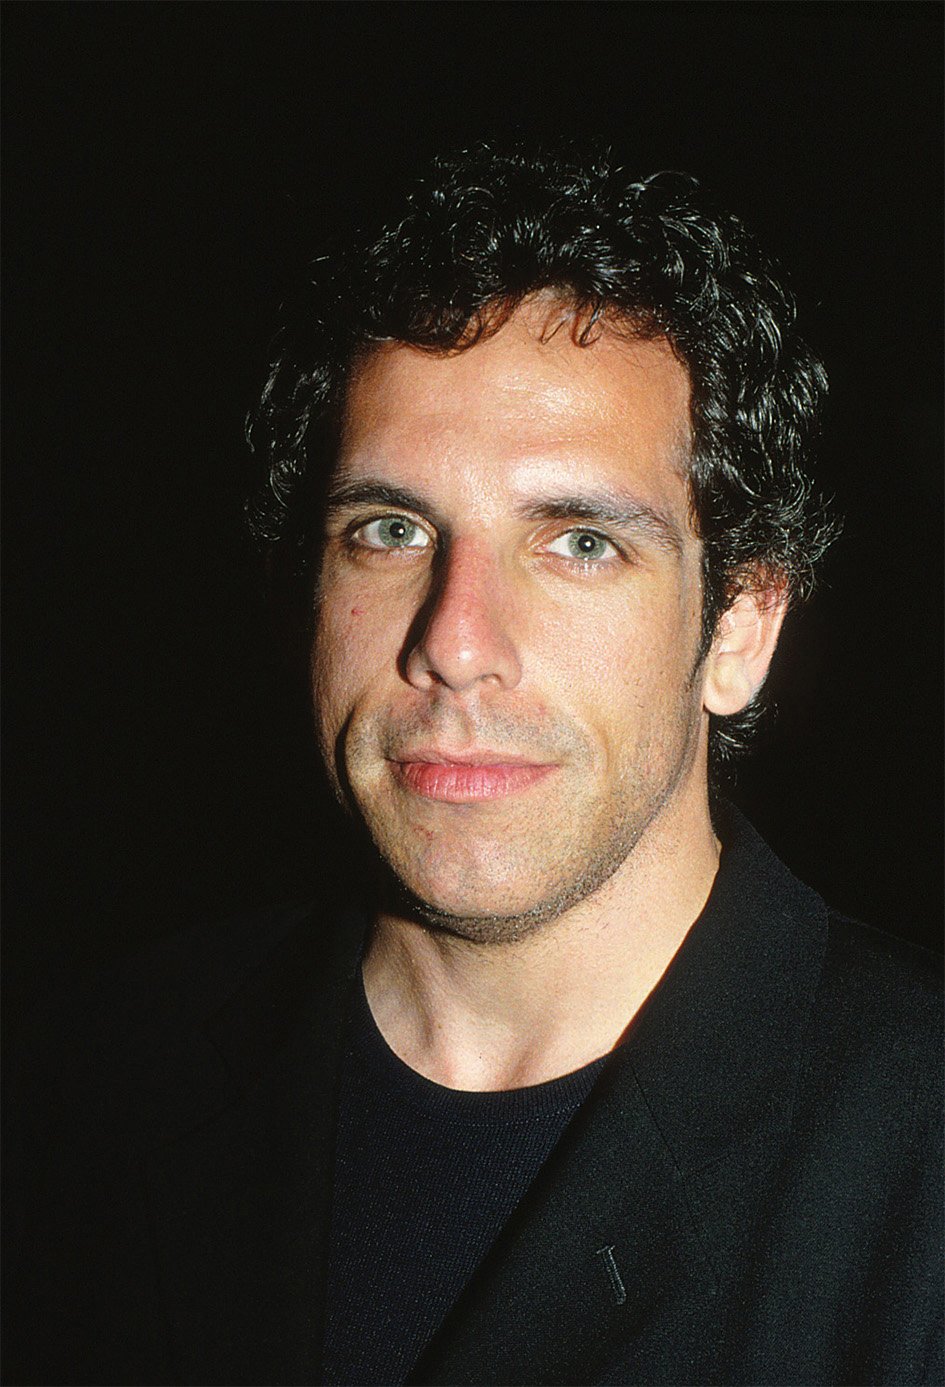 Ben Stiller at the Nantucket Film Festival on June 19, 1998 |  Source: Getty Images